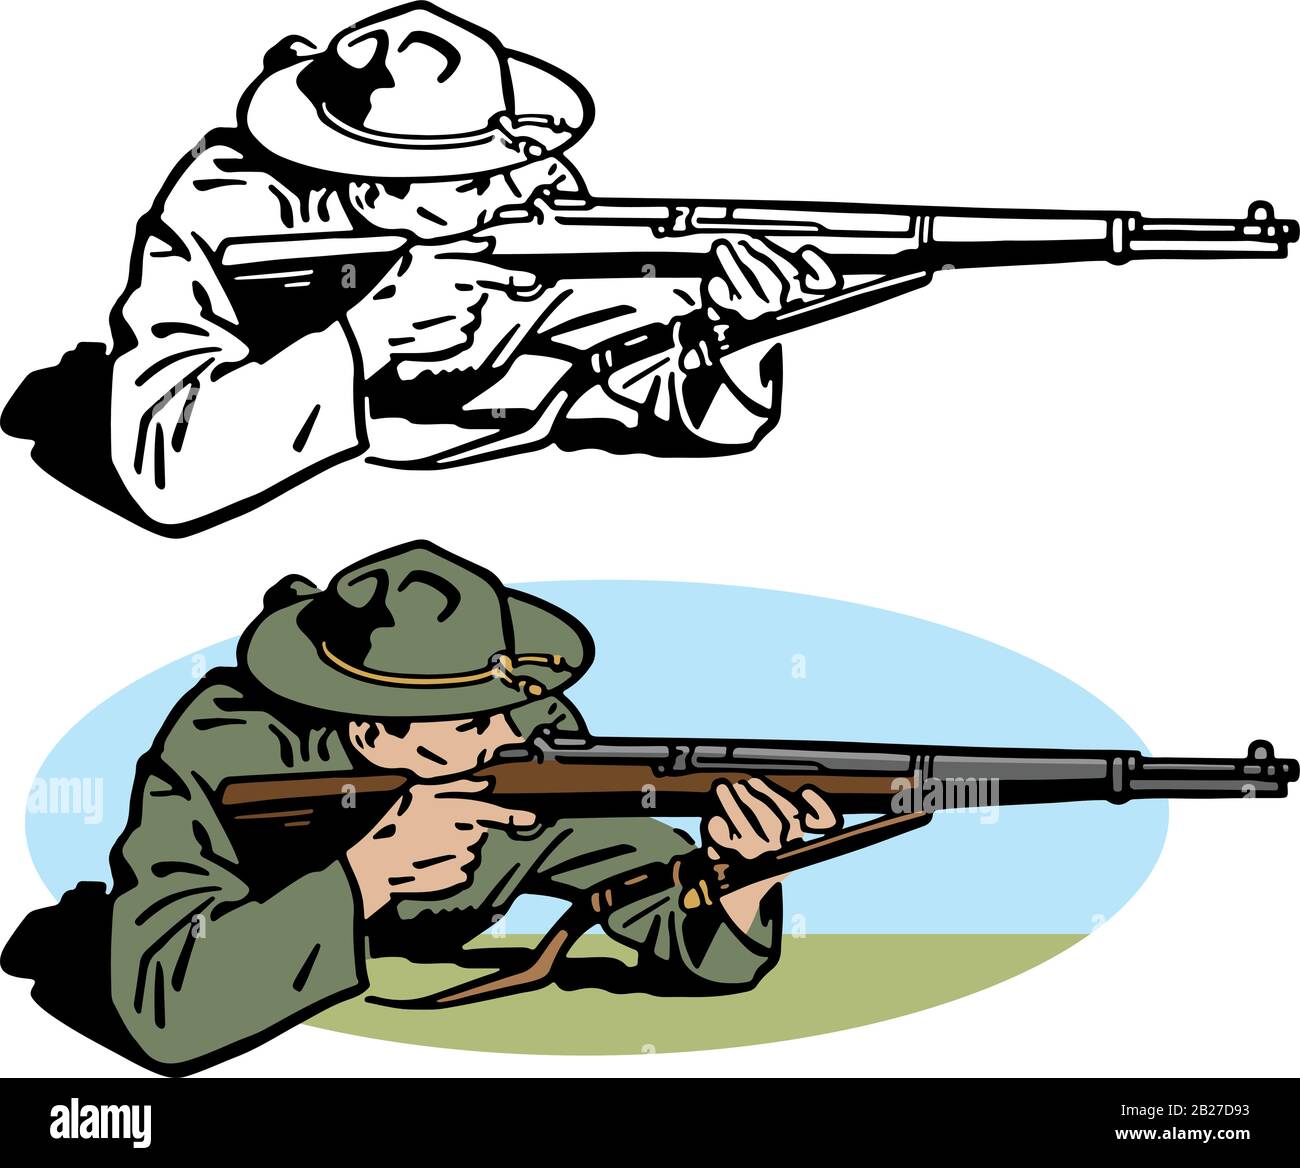 Eine Zeichnung eines Soldaten der Armee aus der Zeit des zweiten Weltkriegs, der während des Gefechts ein Gewehr anstrebte. Stock Vektor